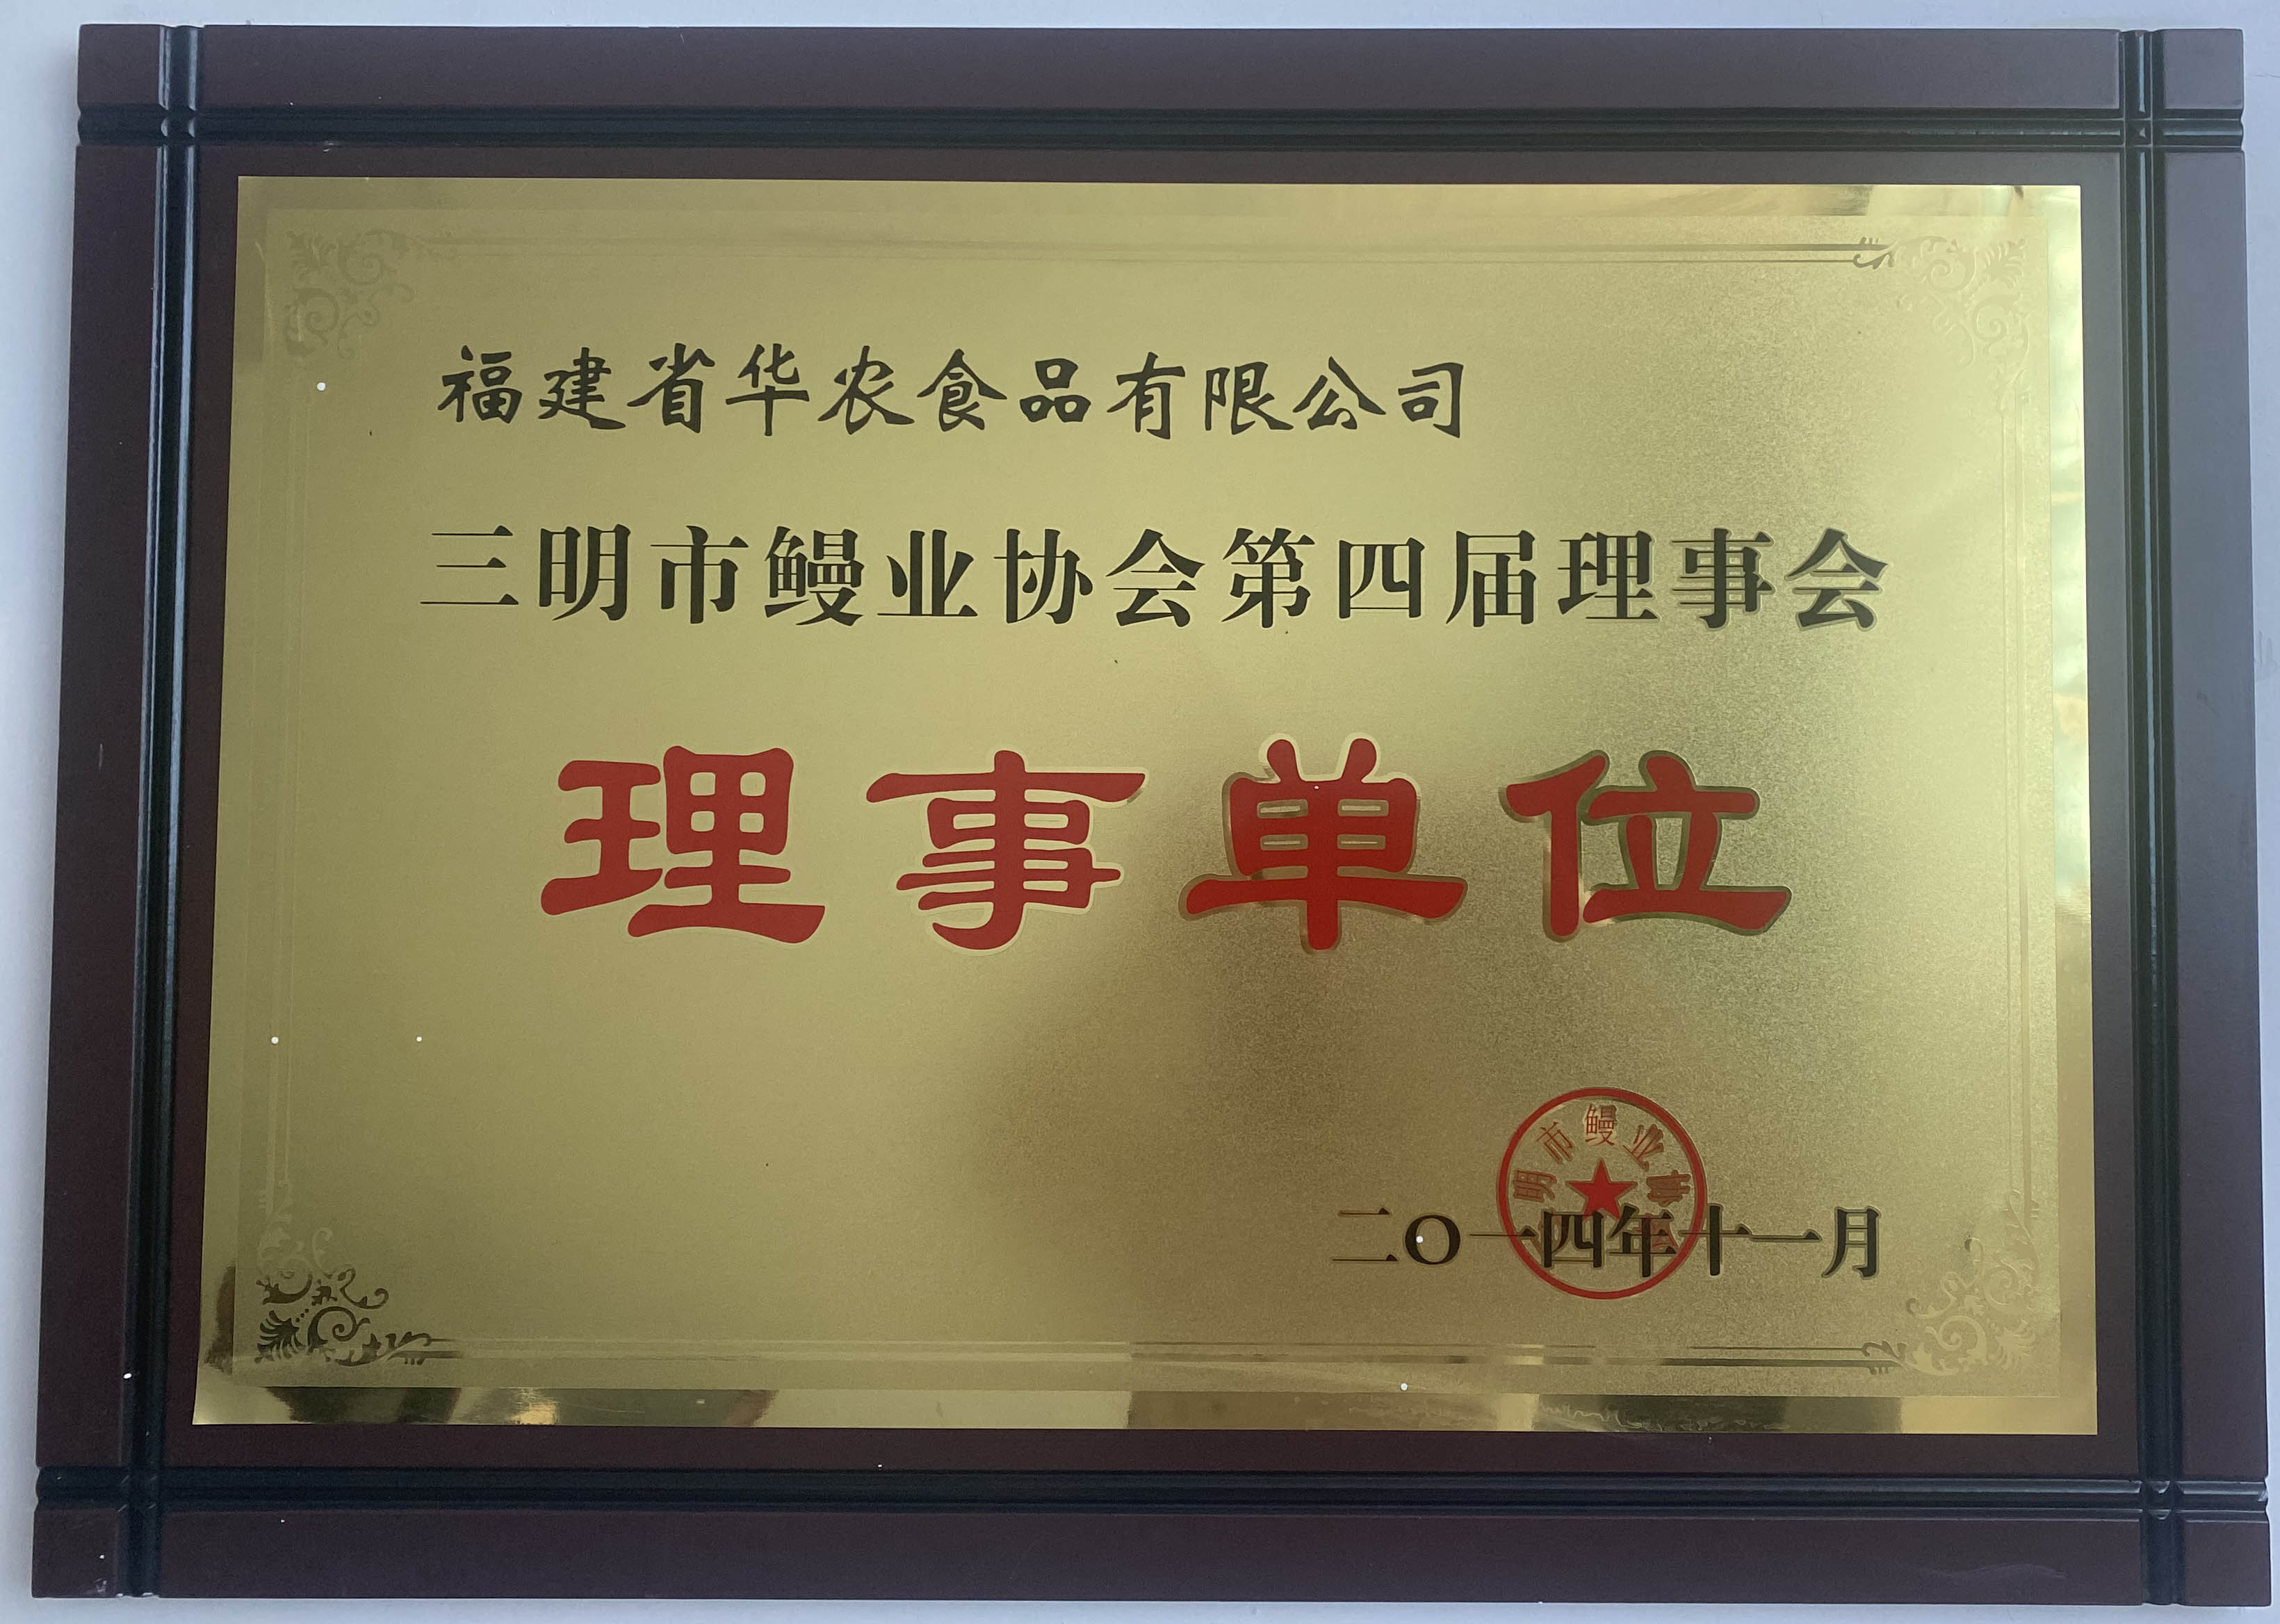 2014年11月荣获三明市鳗业协会第四届理事会明市鳗业协会第四届理事会荣誉称号